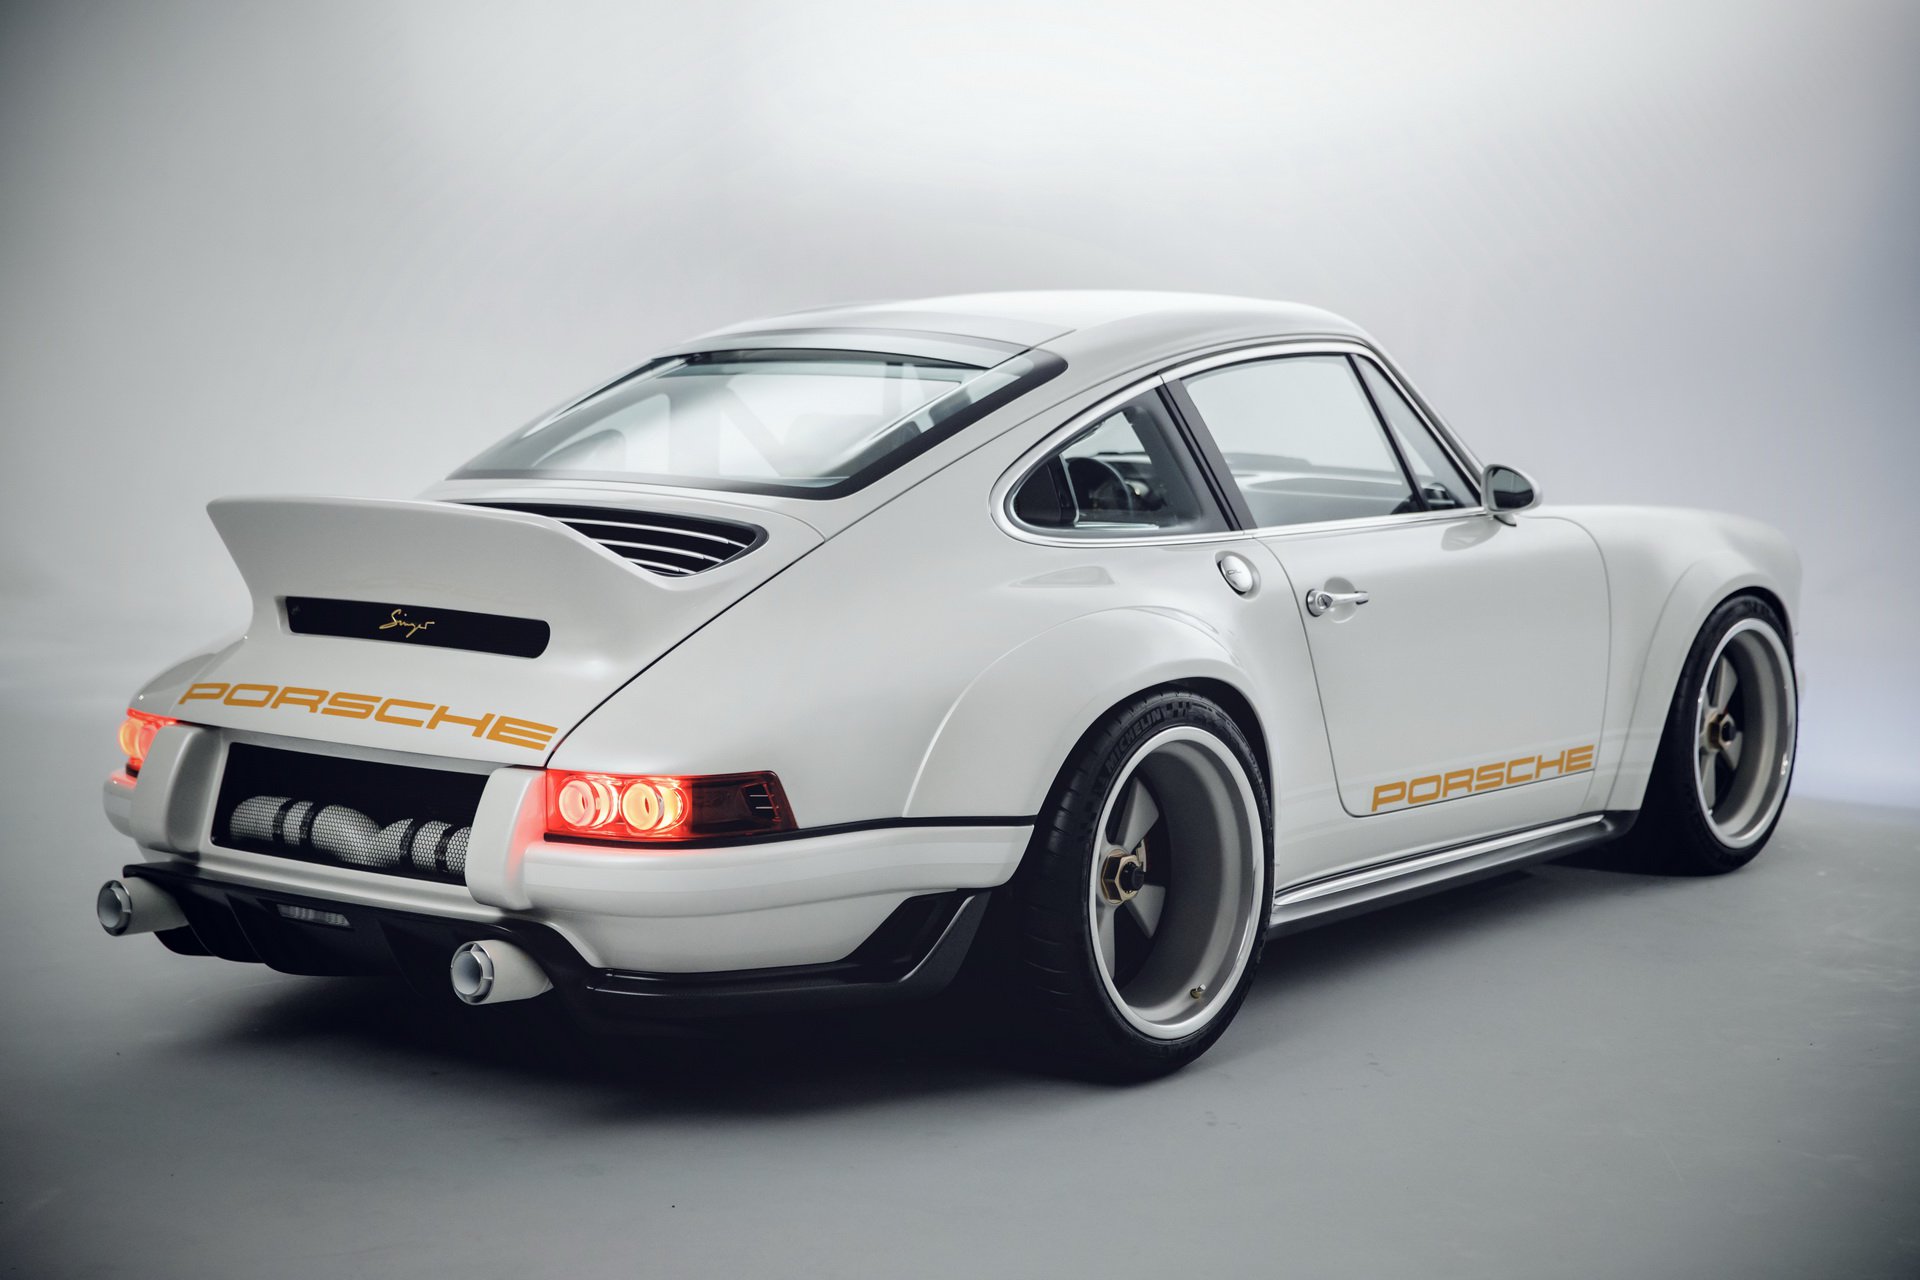 ¿Por qué este Porsche 911 cuesta 1,6 millones de euros